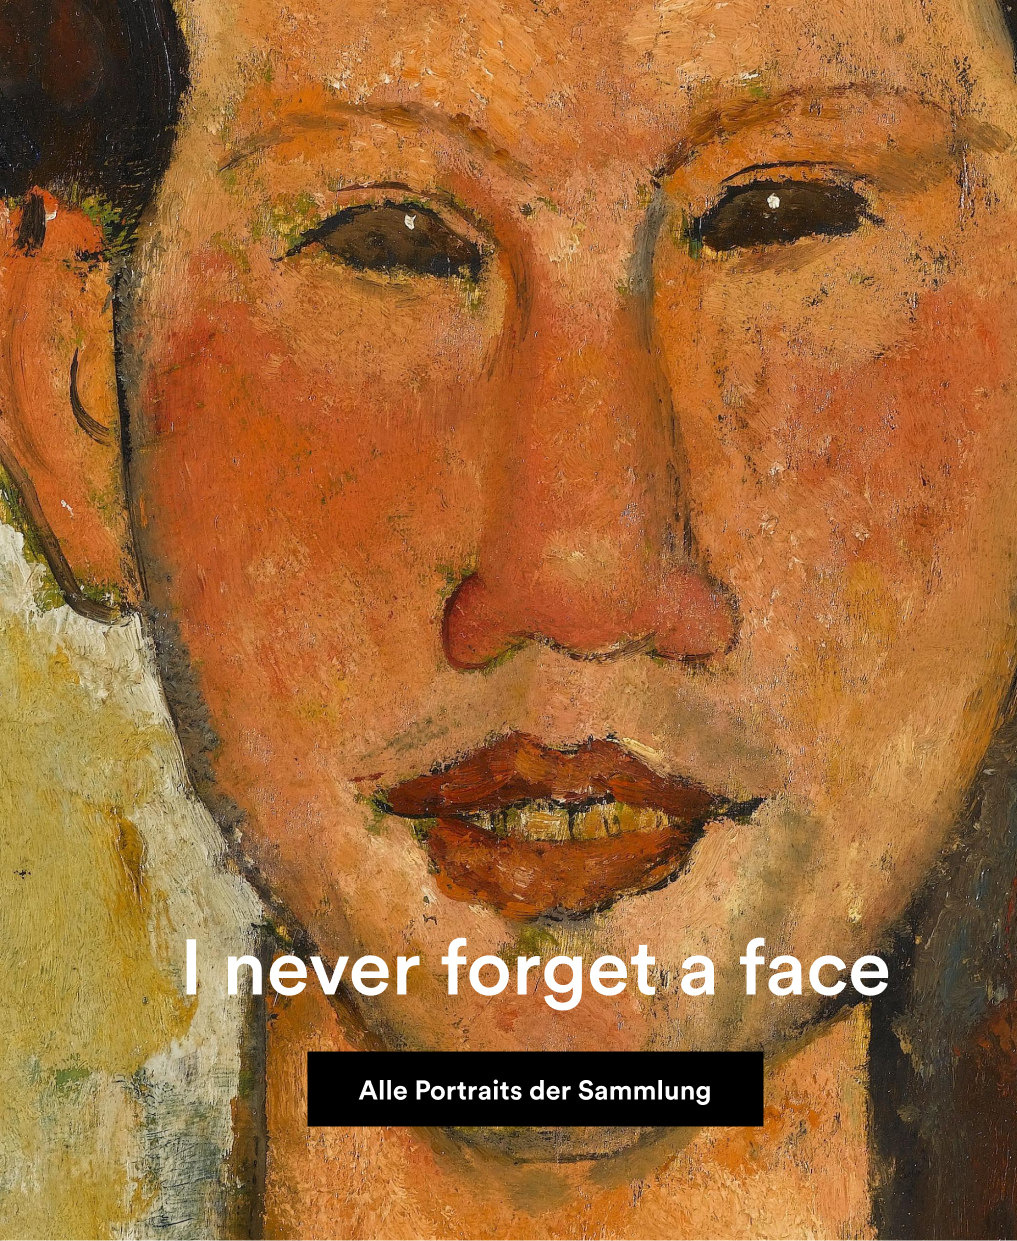 Über einem Ausschnitt eines Portraits von Modigliani steht "I never forget a face". Ein BUtton führt zur Online-Sammlung des Portals.